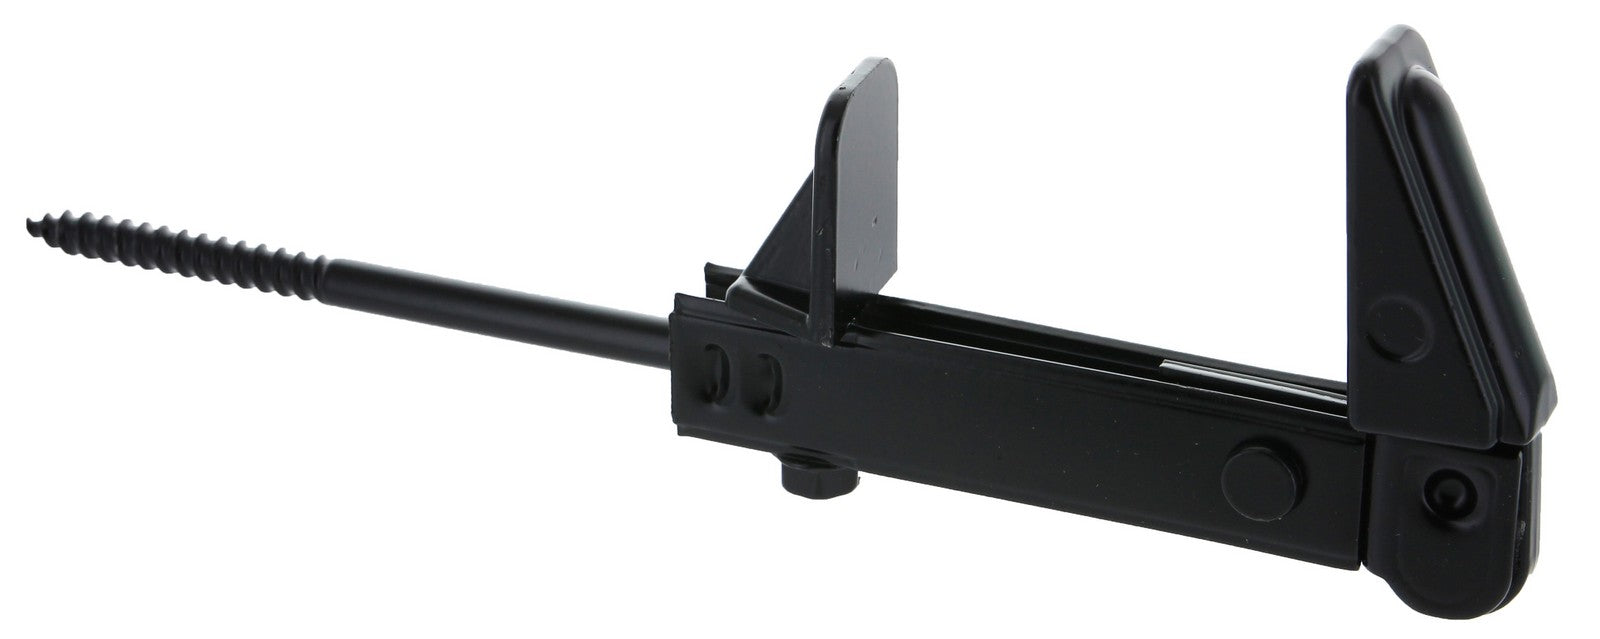 fermaimposte nero registrabile fino a mm 60 fissaggio con vite mm 120 (indicato per cappotto) cod:ferx.39589.stock.s